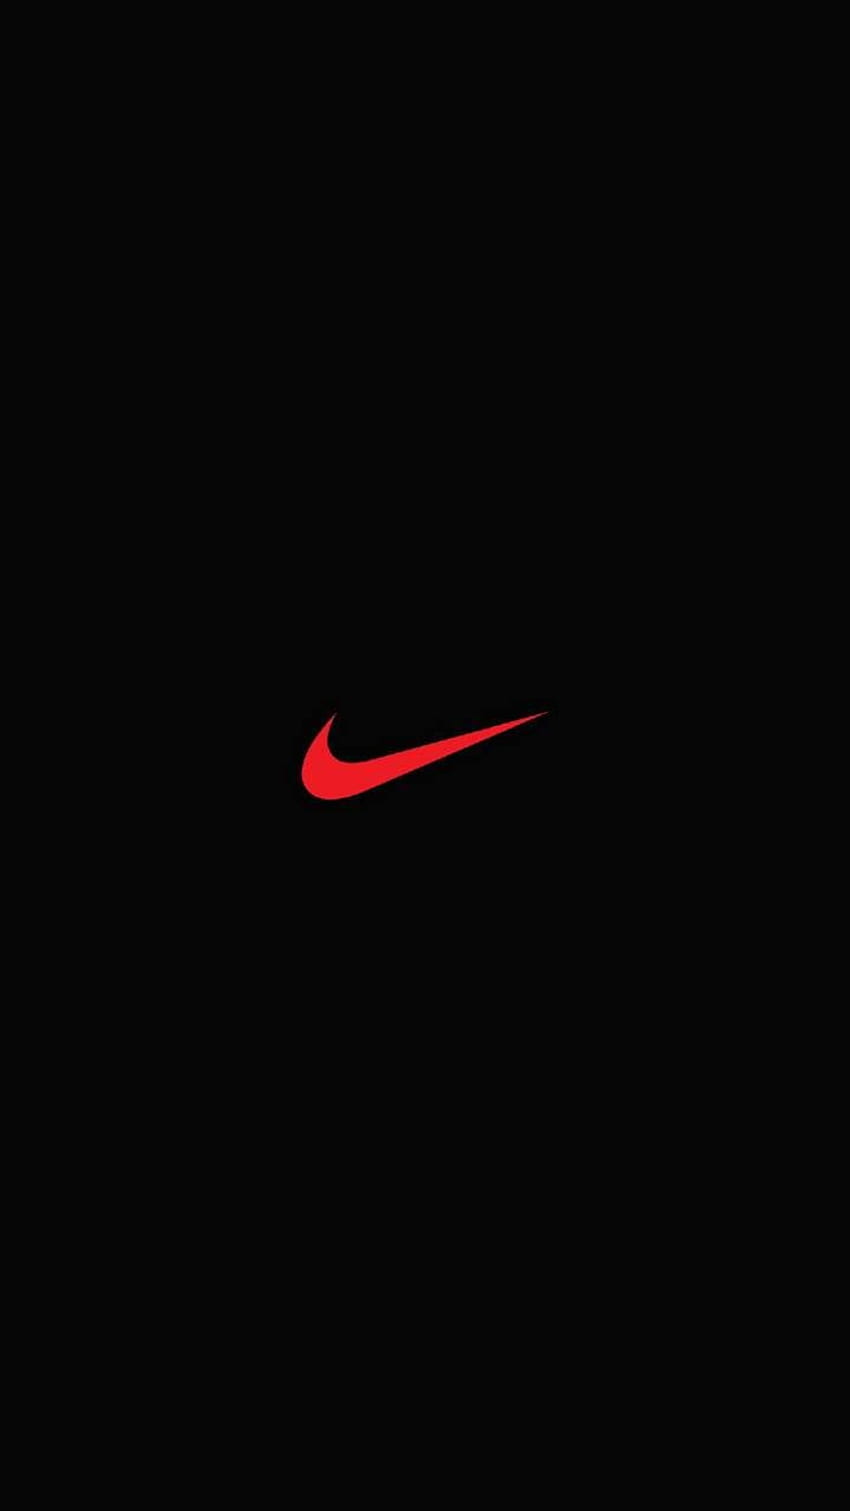 Nike, Red and Black Nike HD phone wallpaper